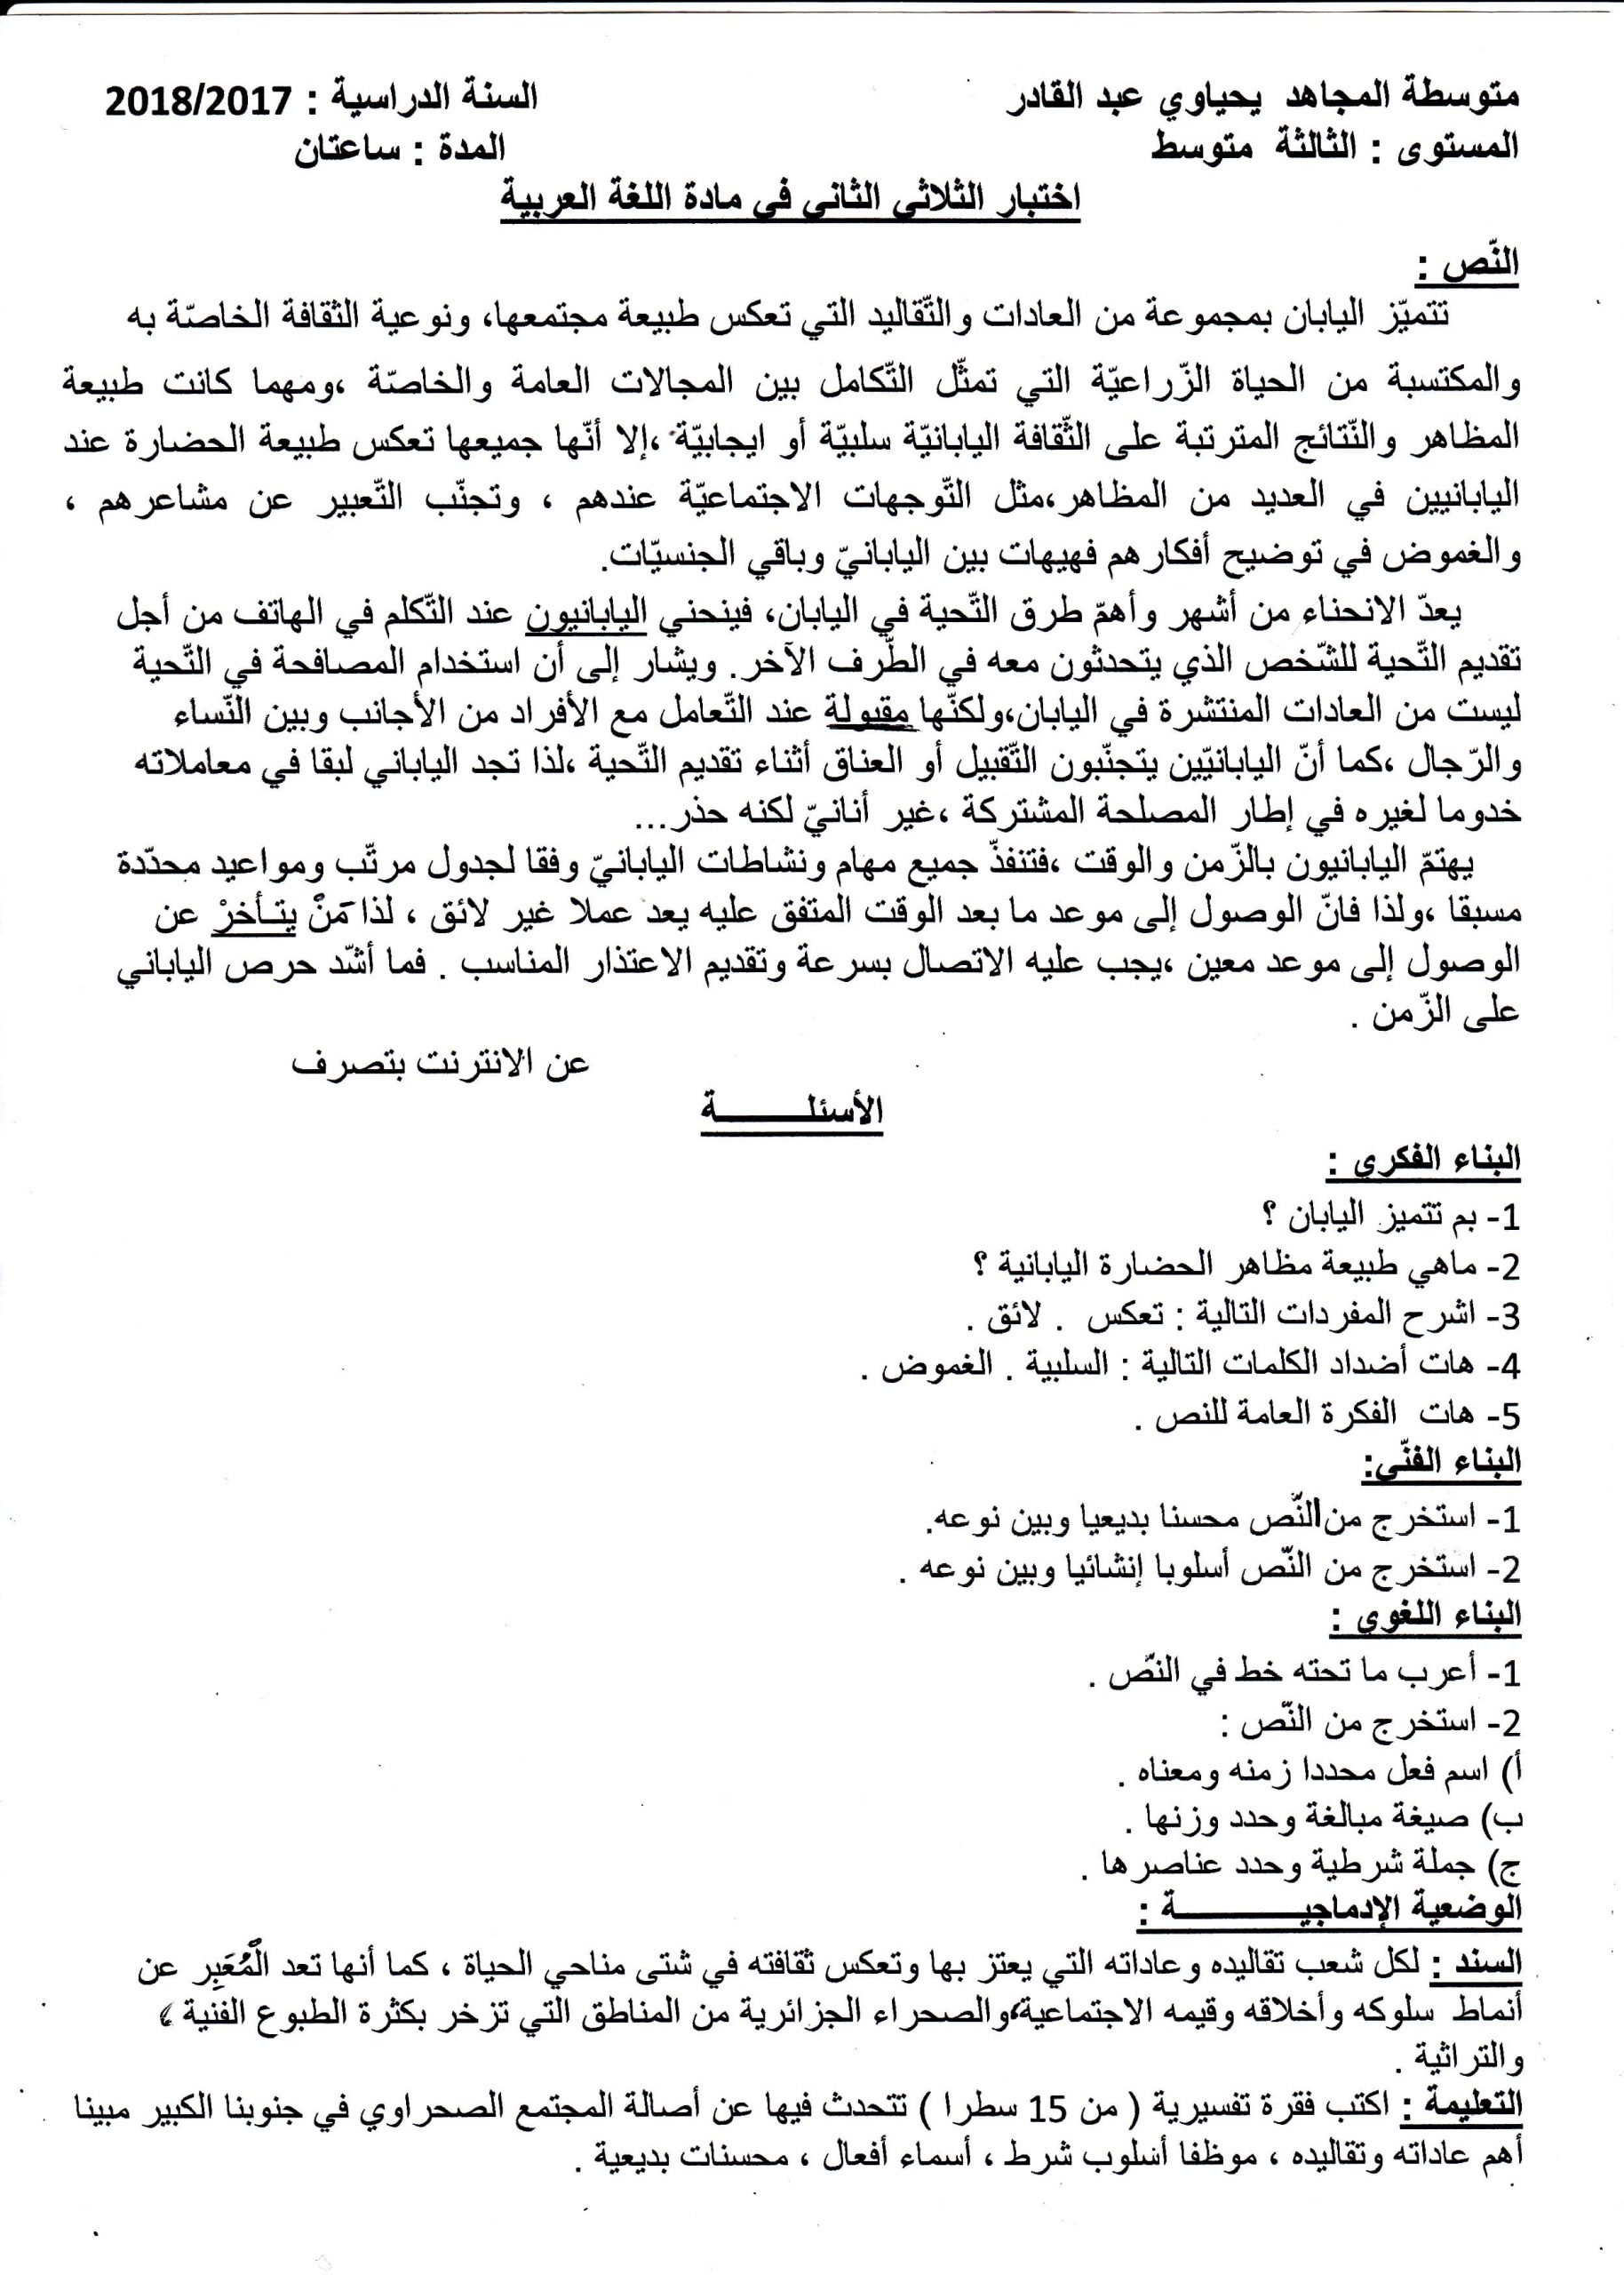 اختبار الفصل الثاني في اللغة العربية السنة الثالثة متوسط | الموضوع 01